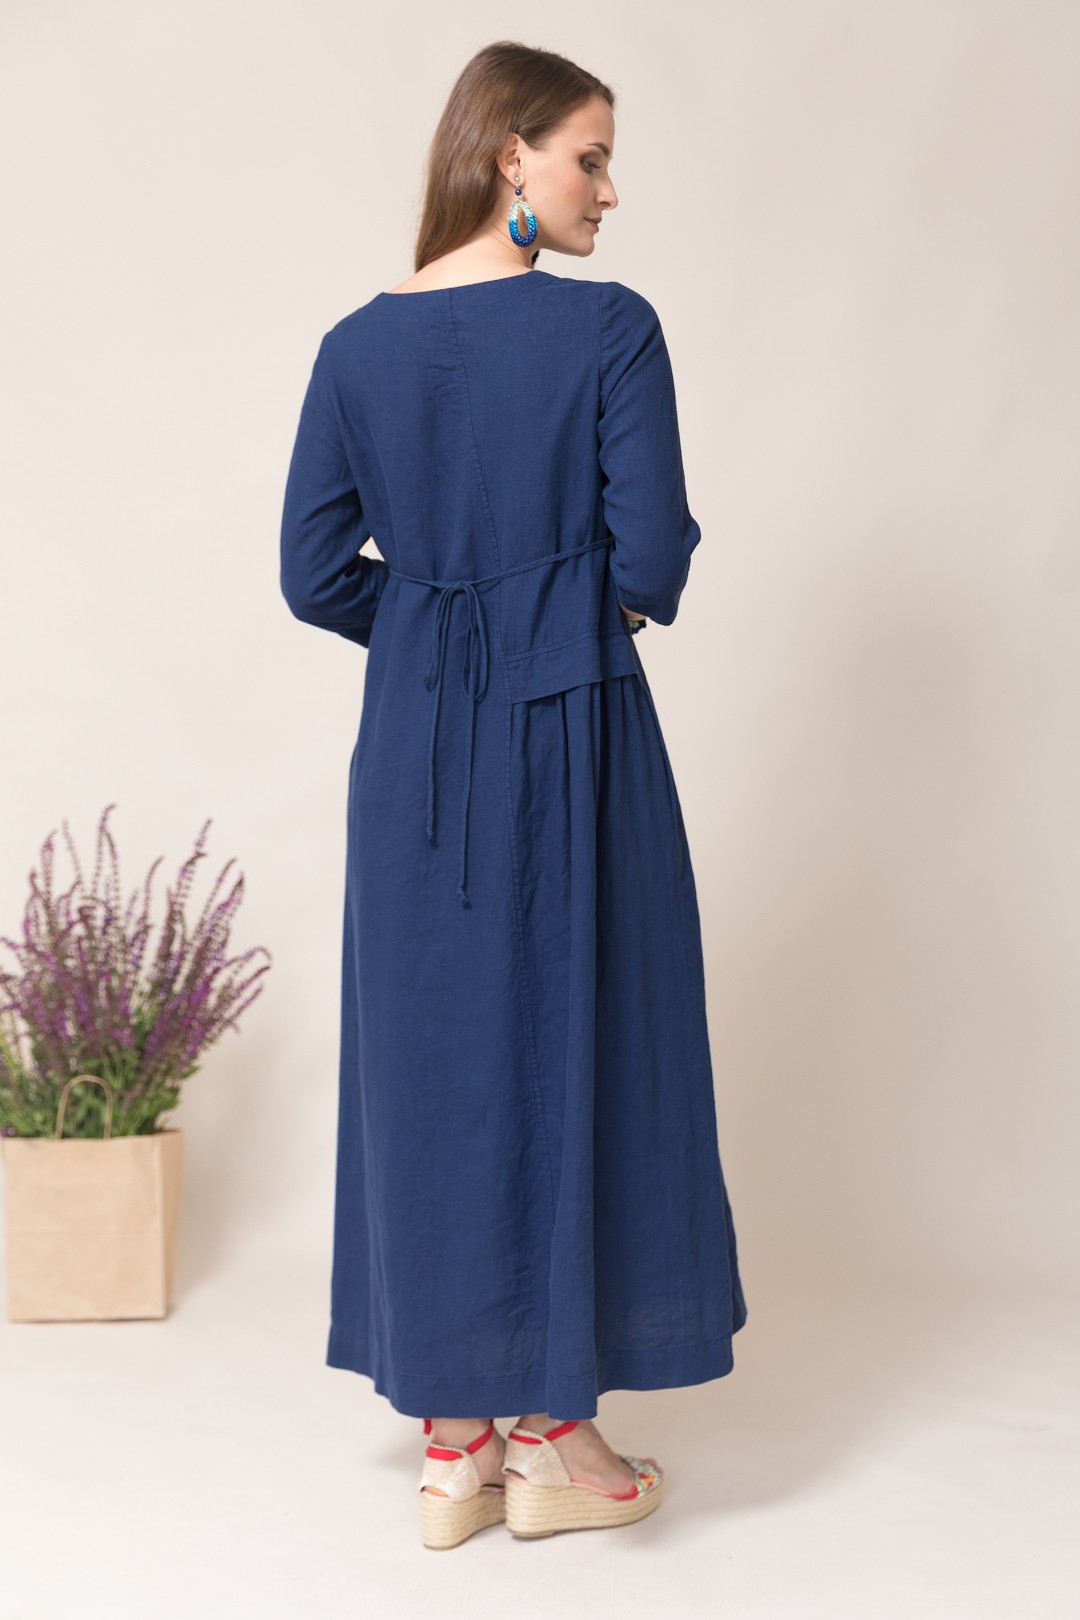 Платье Ружана 367-2 синий